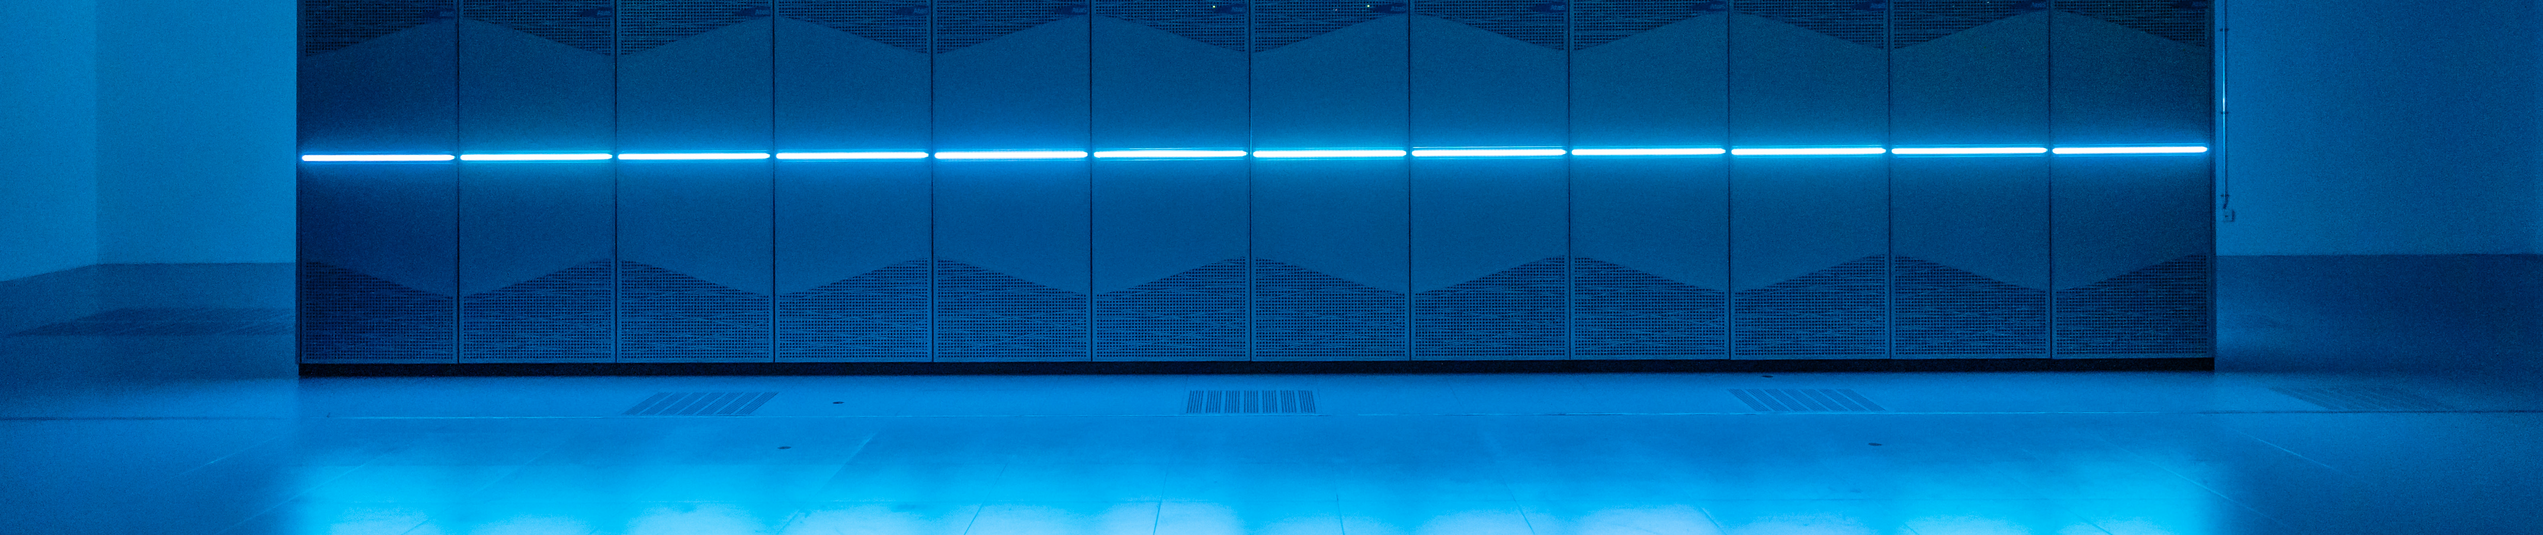 Abbildung eines Großrechners, blau beleuchtet